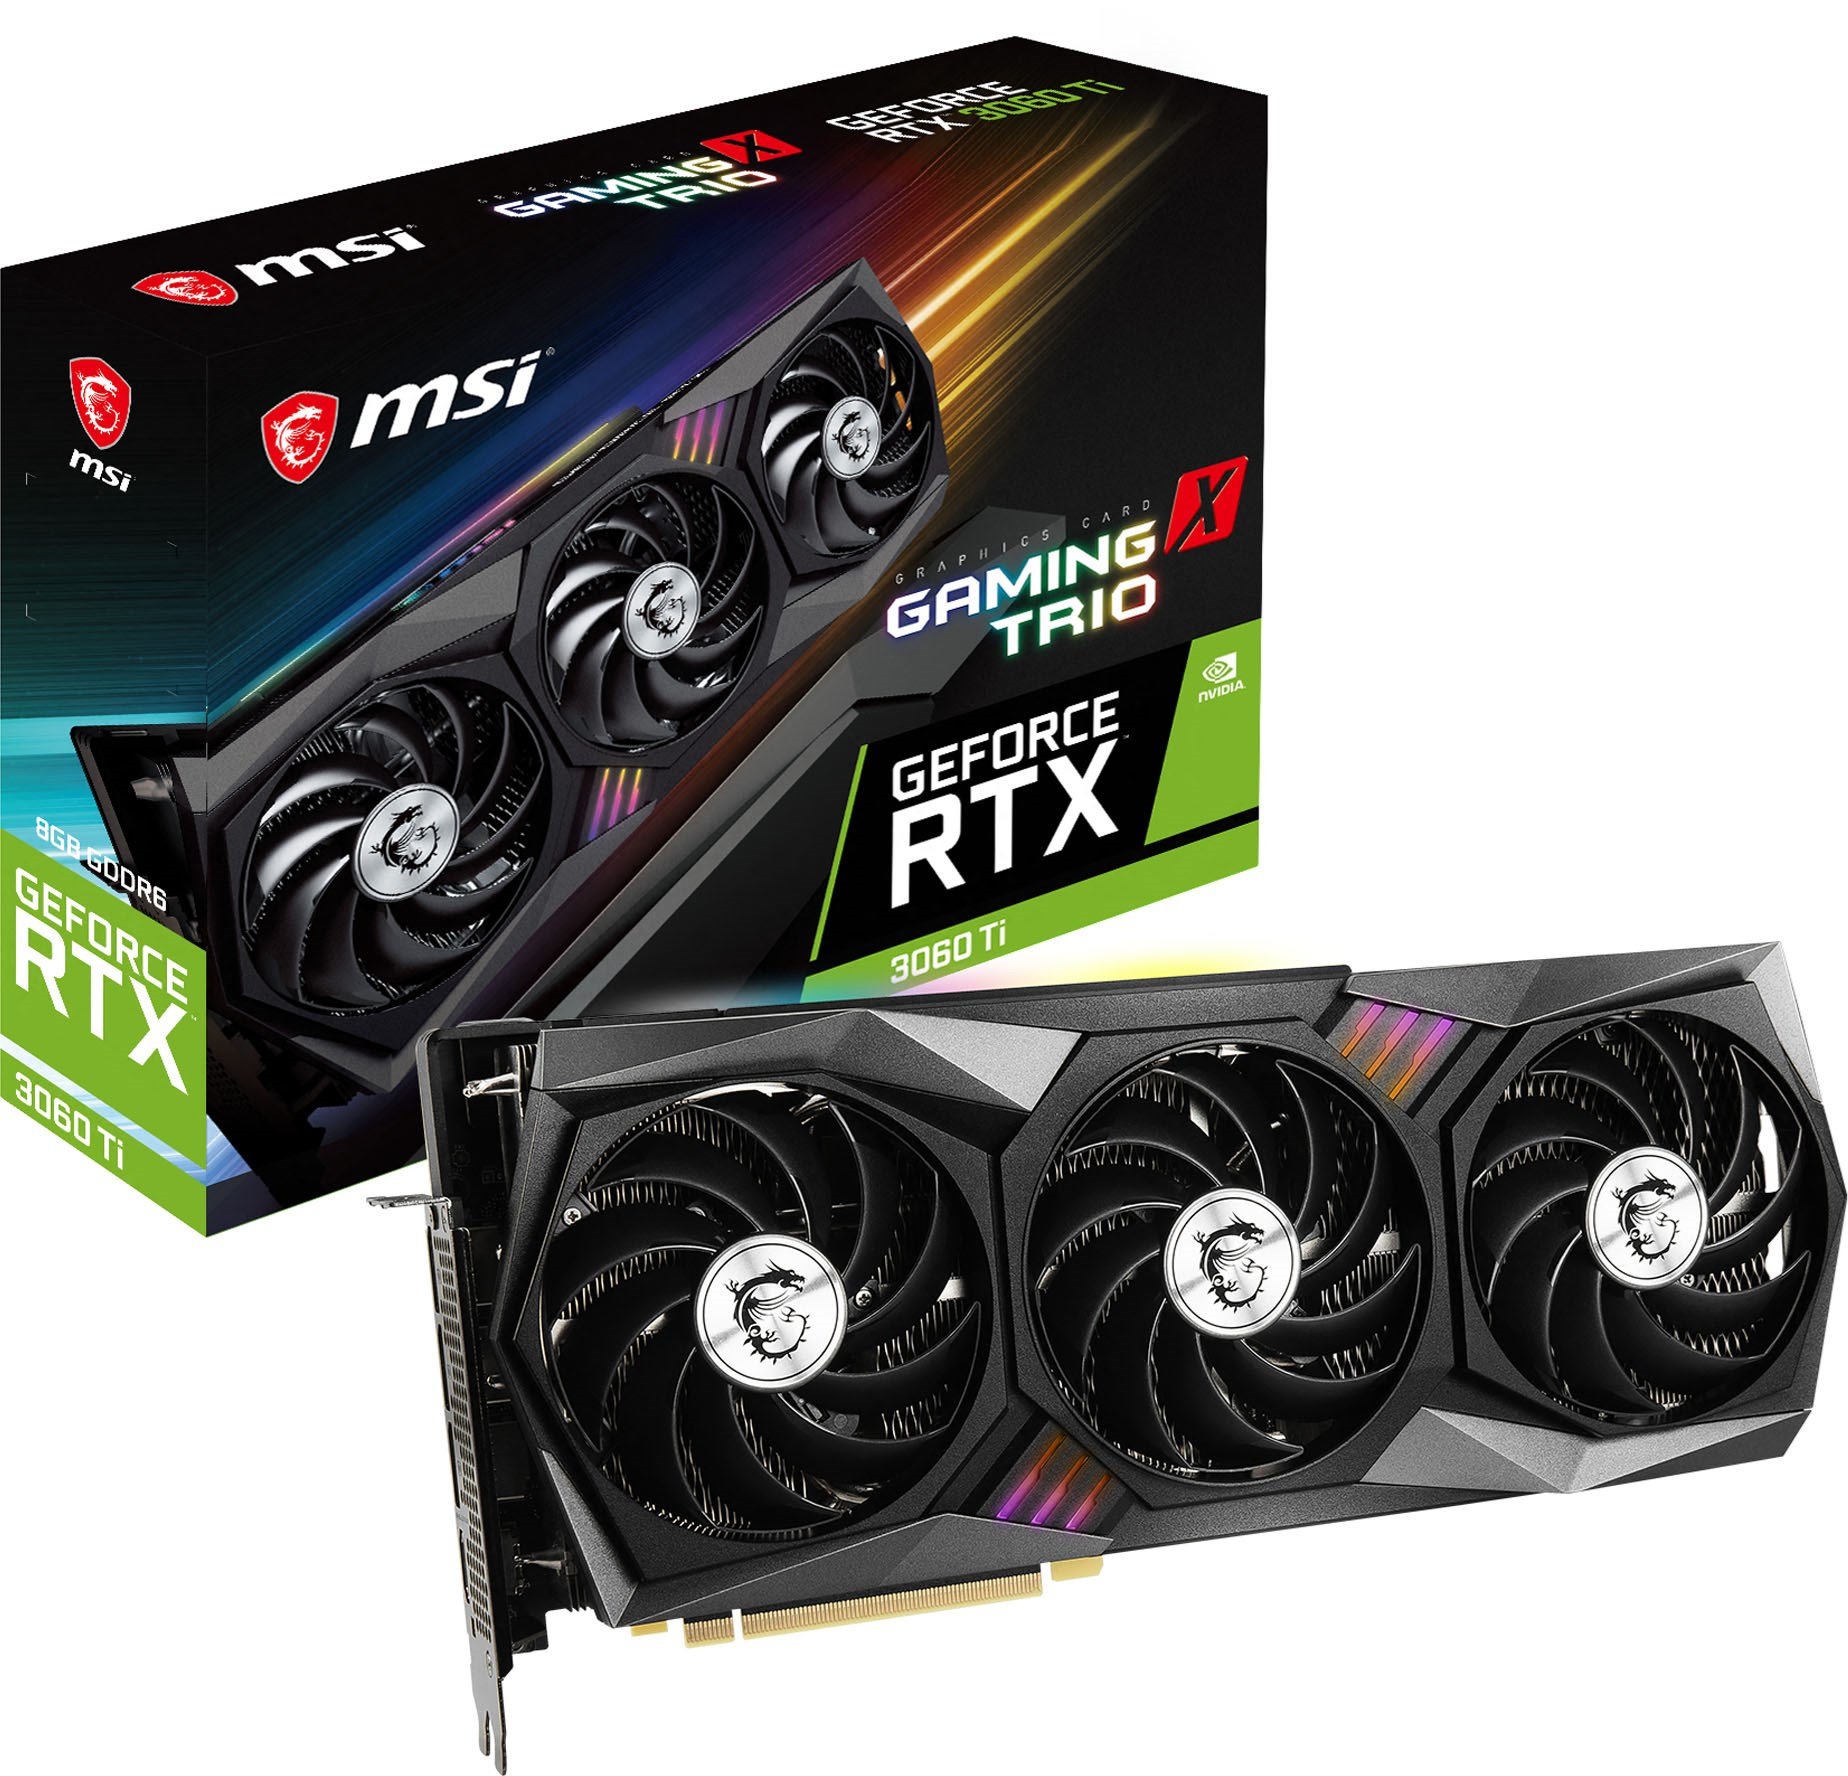 MSI GeForce RTX 3060 Ti GAMING X TRIO 8GB OC GPU - RTX 3060 Ti GAMING X